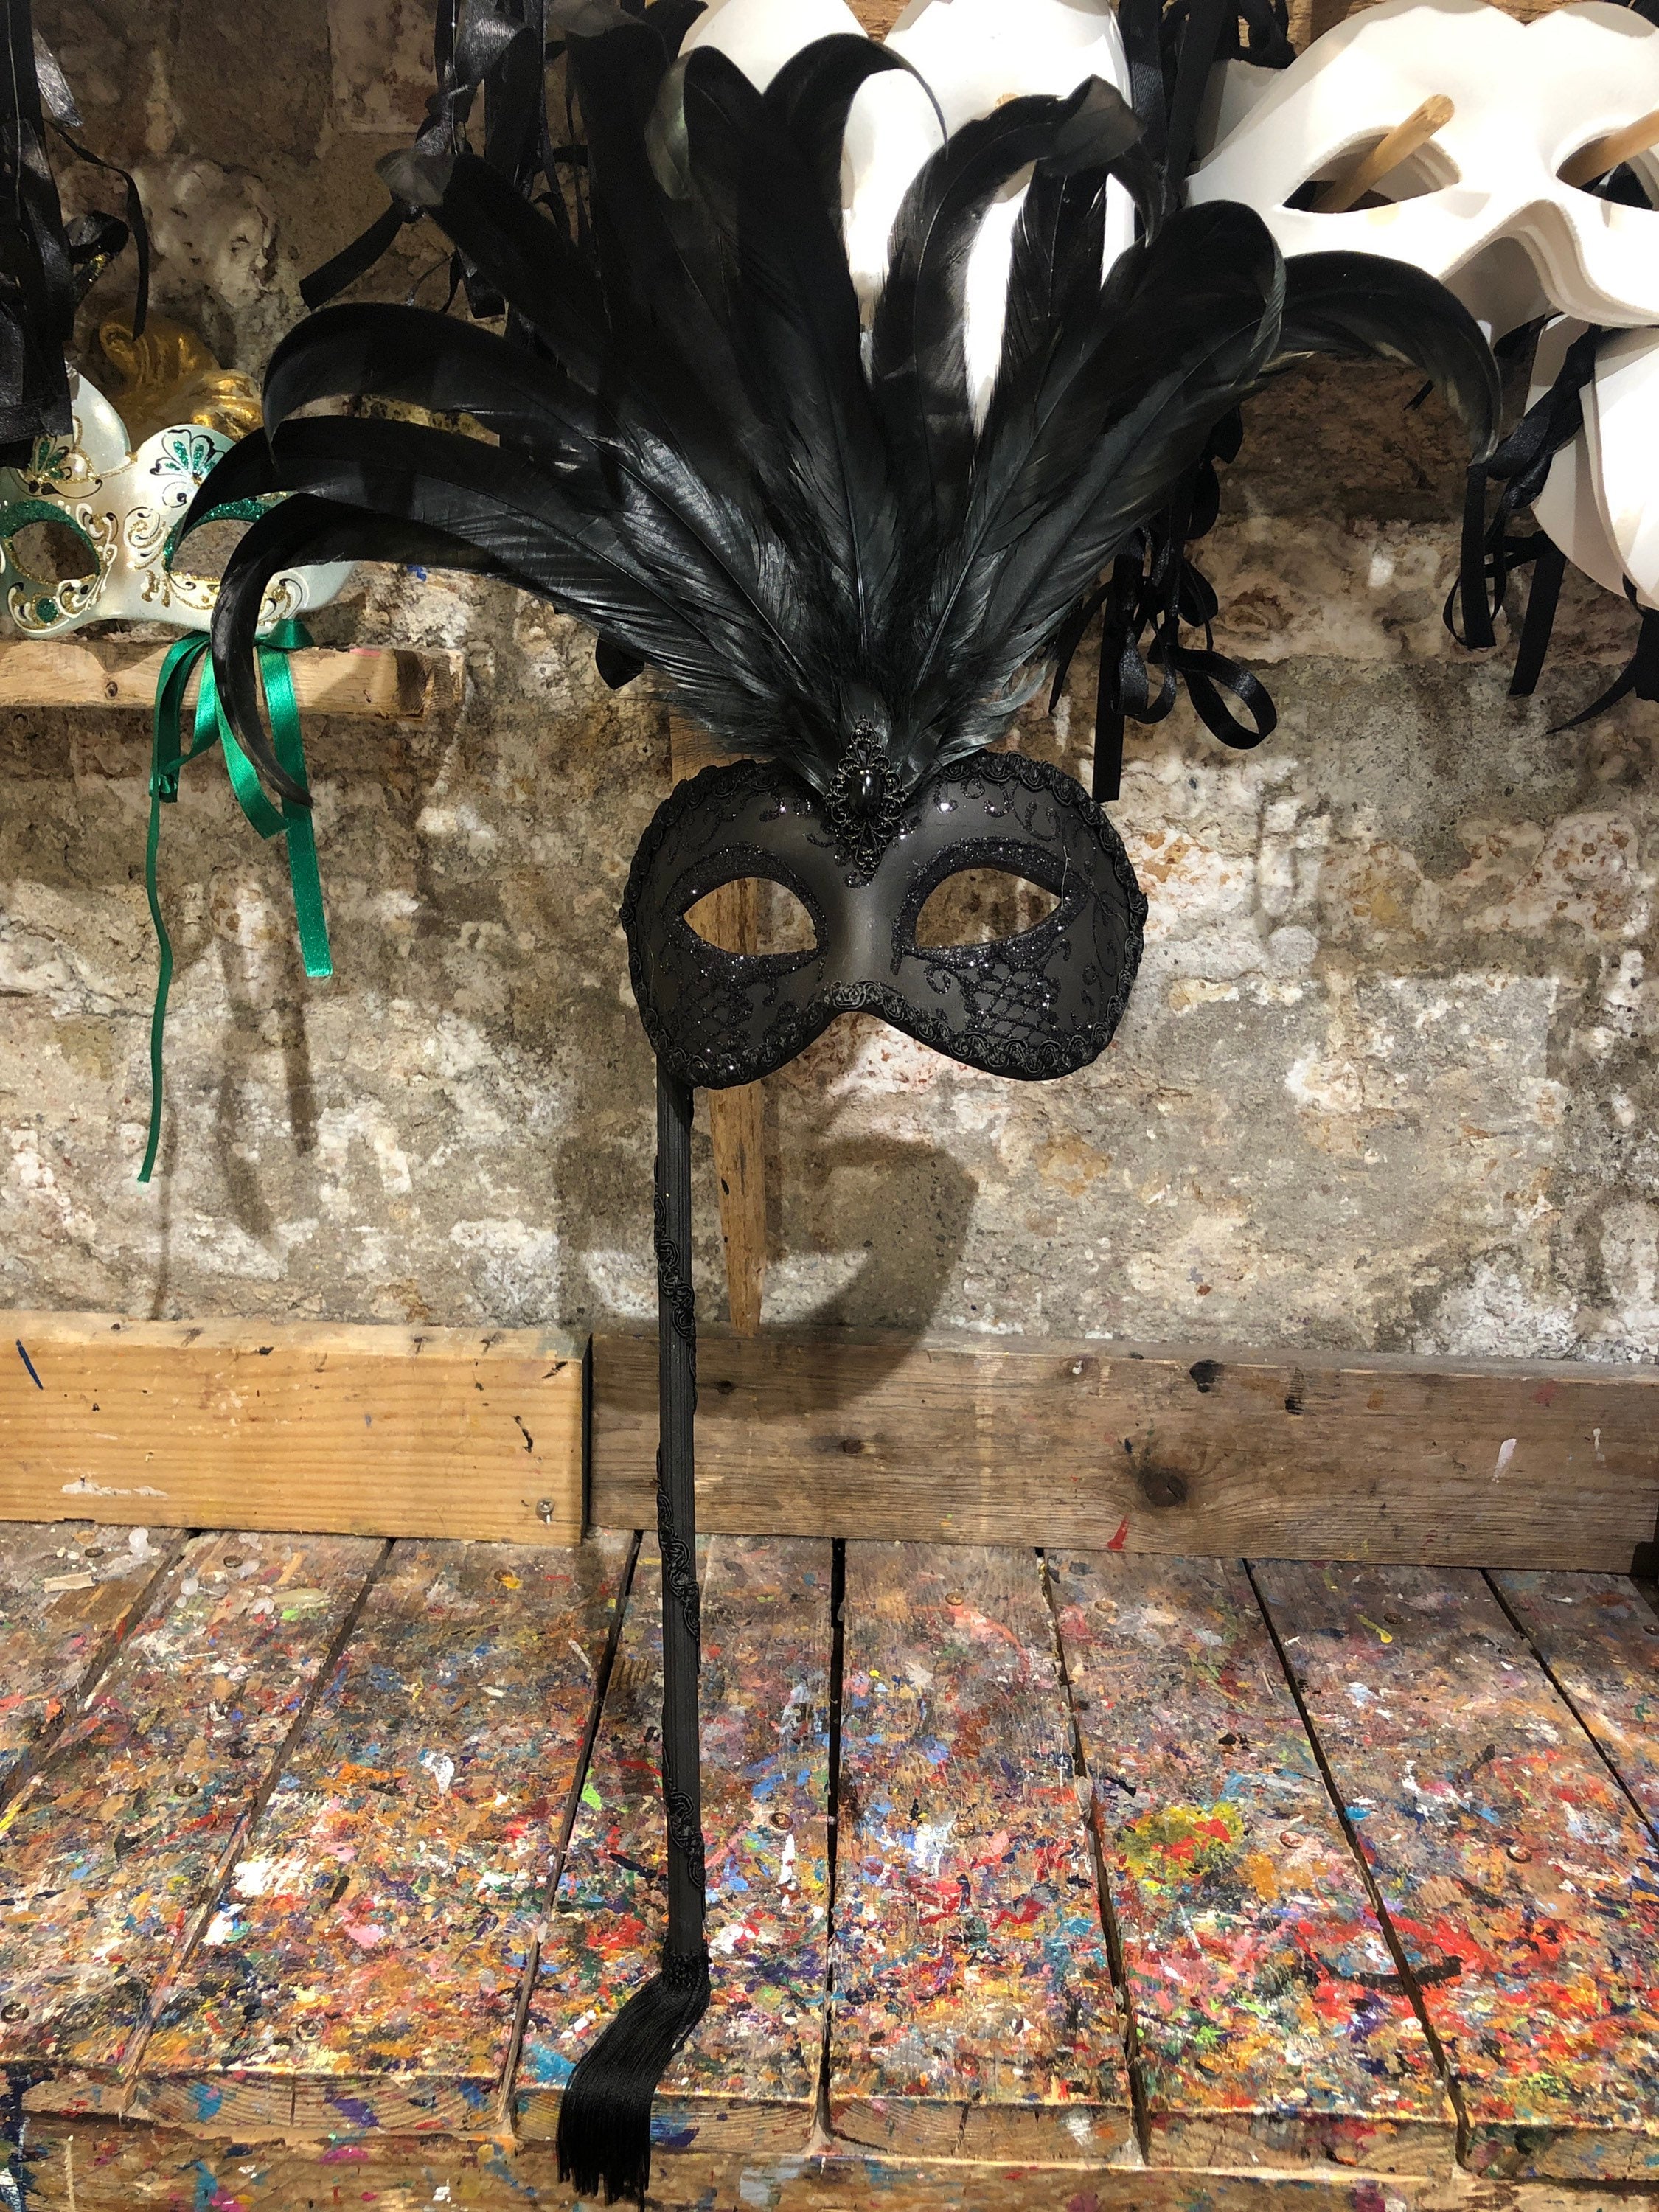 Antifaz Máscara Veneciana para Carnaval Color Negro